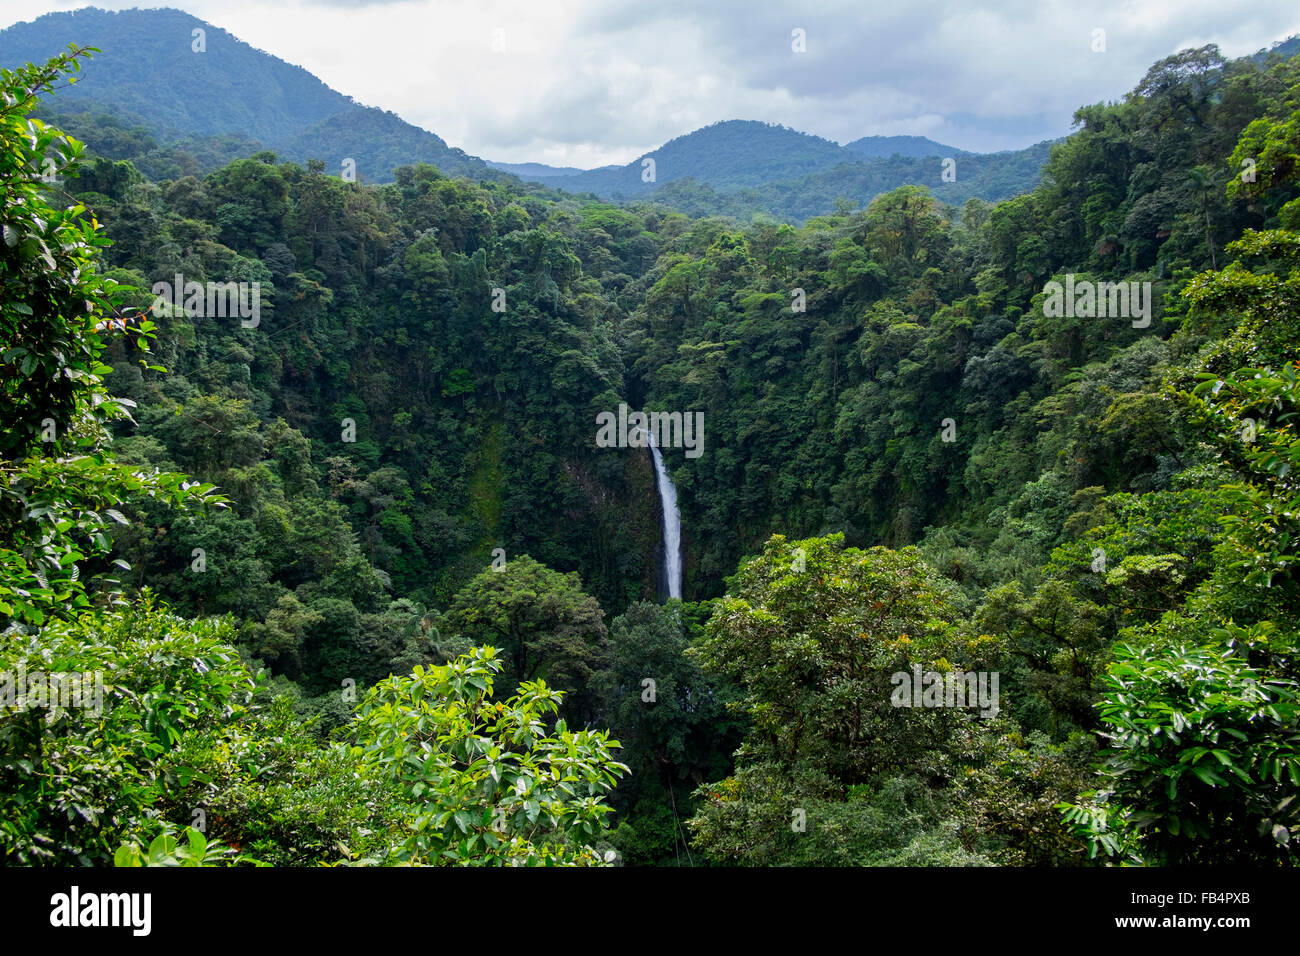 La cascade de La Fortuna à proximité de la ville de La Fortuna, Costa Rica. Banque D'Images